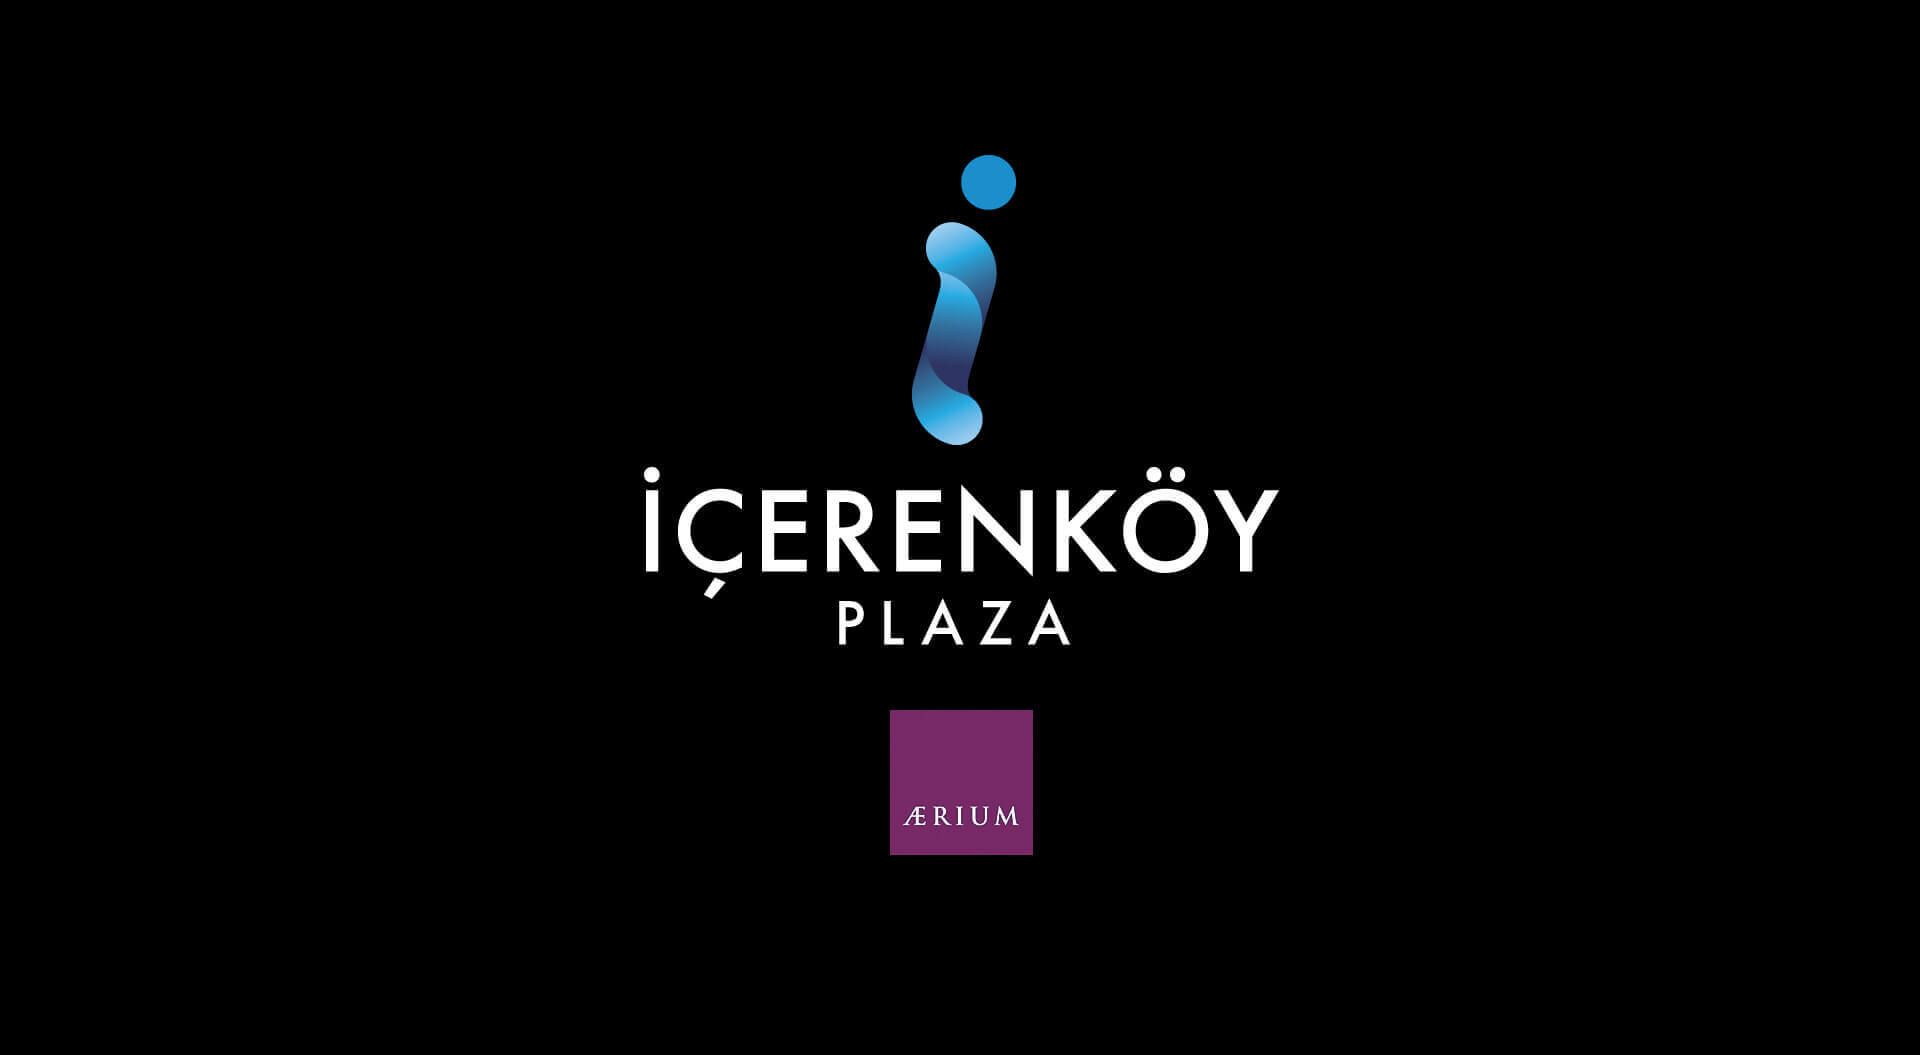 Icerenkoy shopping mall Istanbul Turkey brand identity